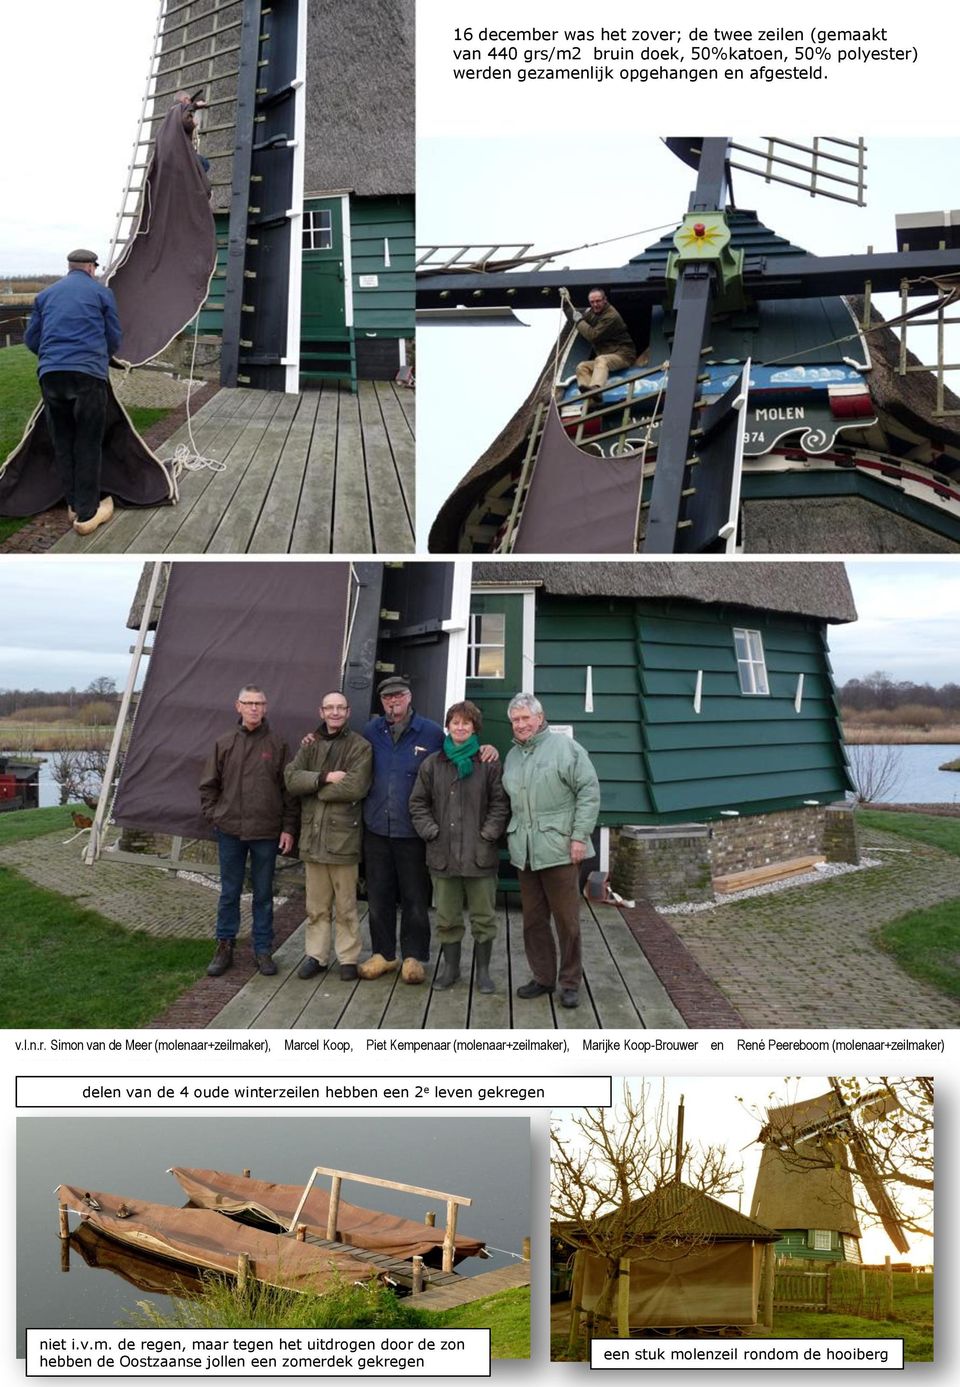 Simon van de Meer (molenaar+zeilmaker), Marcel Koop, Piet Kempenaar (molenaar+zeilmaker), Marijke Koop-Brouwer en René Peereboom